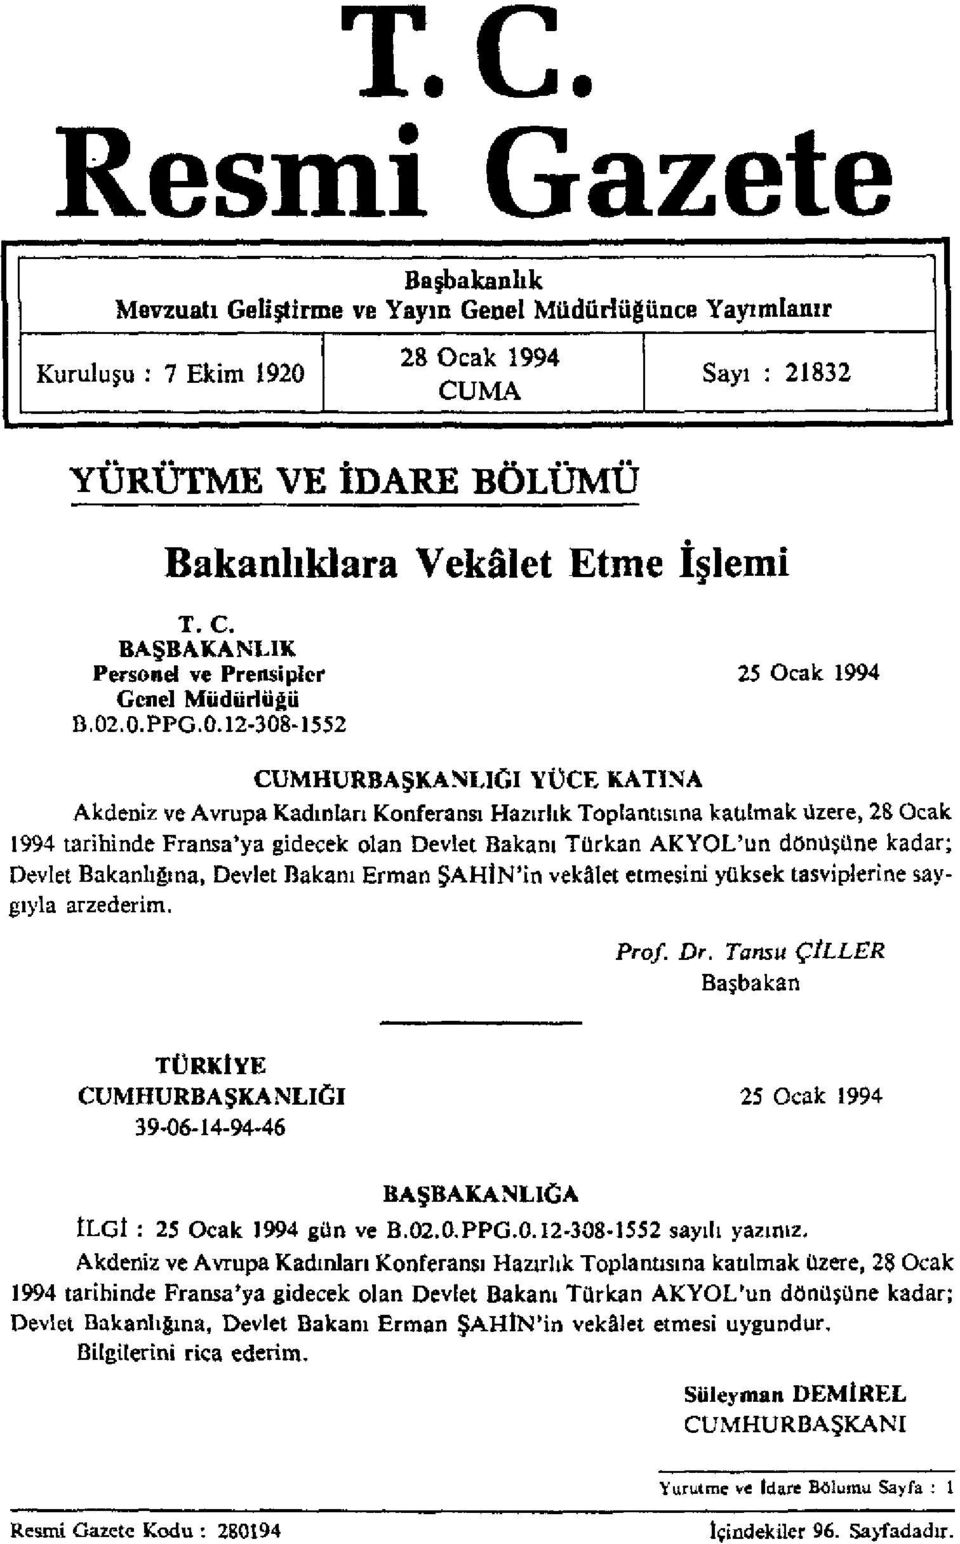 .0.PPG.0.12-308-1552 CUMHURBAŞKANLIĞI YÜCE KATINA Akdeniz ve Avrupa Kadınları Konferansı Hazırlık Toplantısına katılmak üzere, 28 Ocak 1994 tarihinde Fransa'ya gidecek olan Devlet Bakanı Türkan